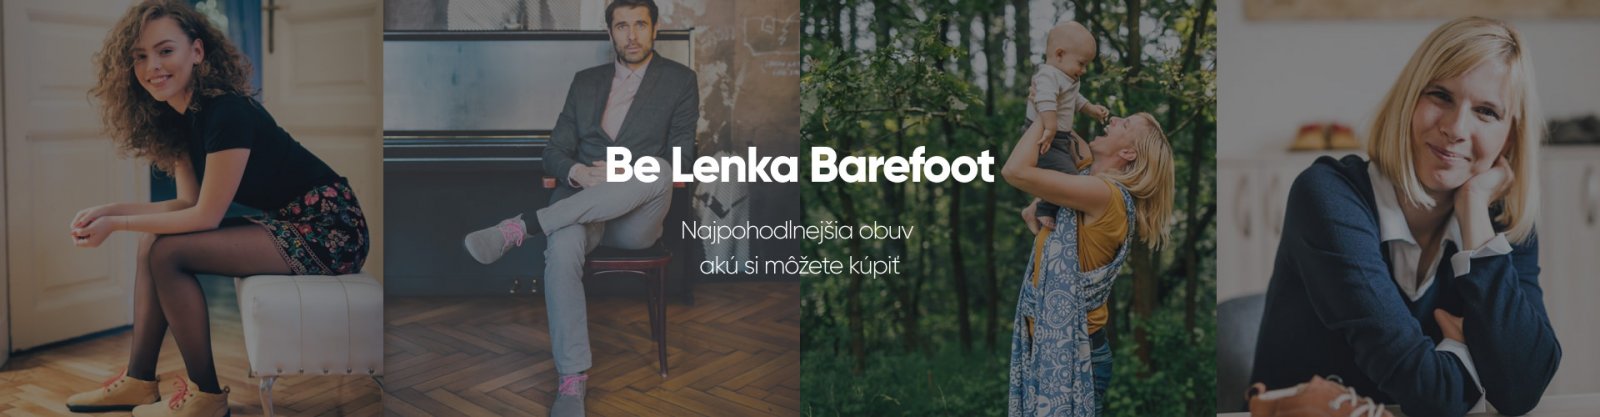 Be Lenka | Official | Barefoot boty, eronogmická nosítka a šátky na nošení dětí